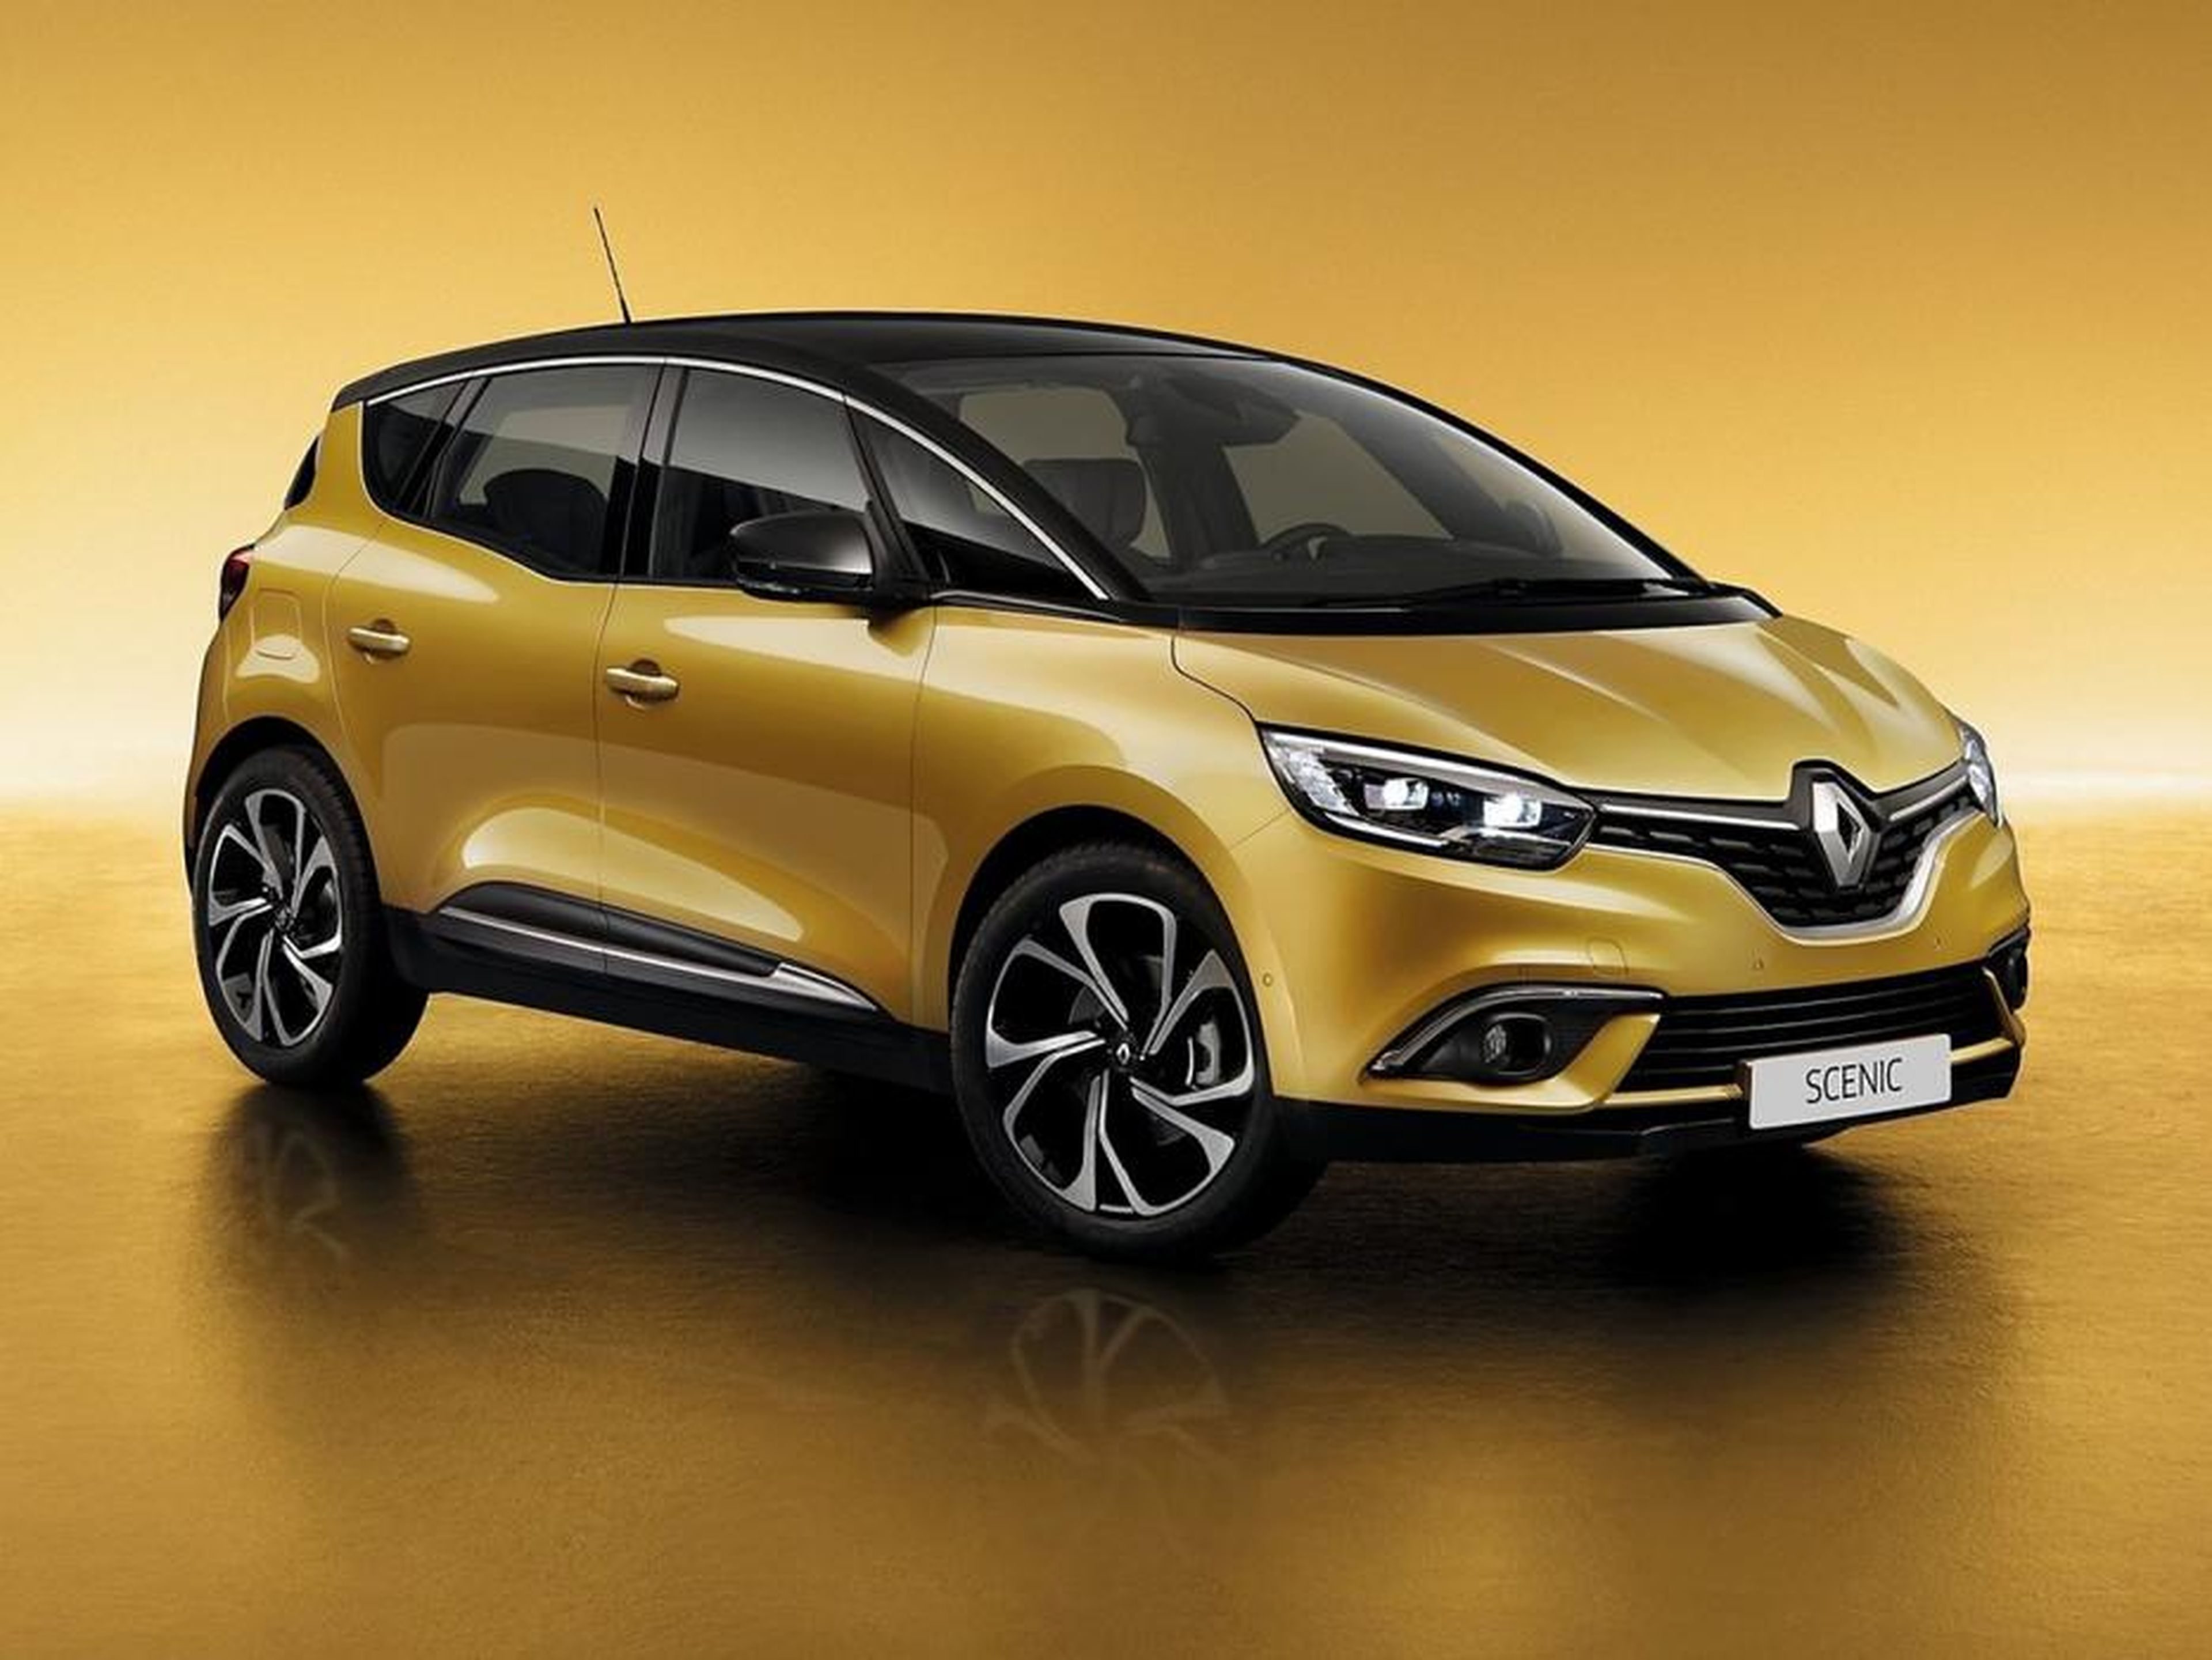 Renault Scenic, ¿mejor diésel o gasolina?